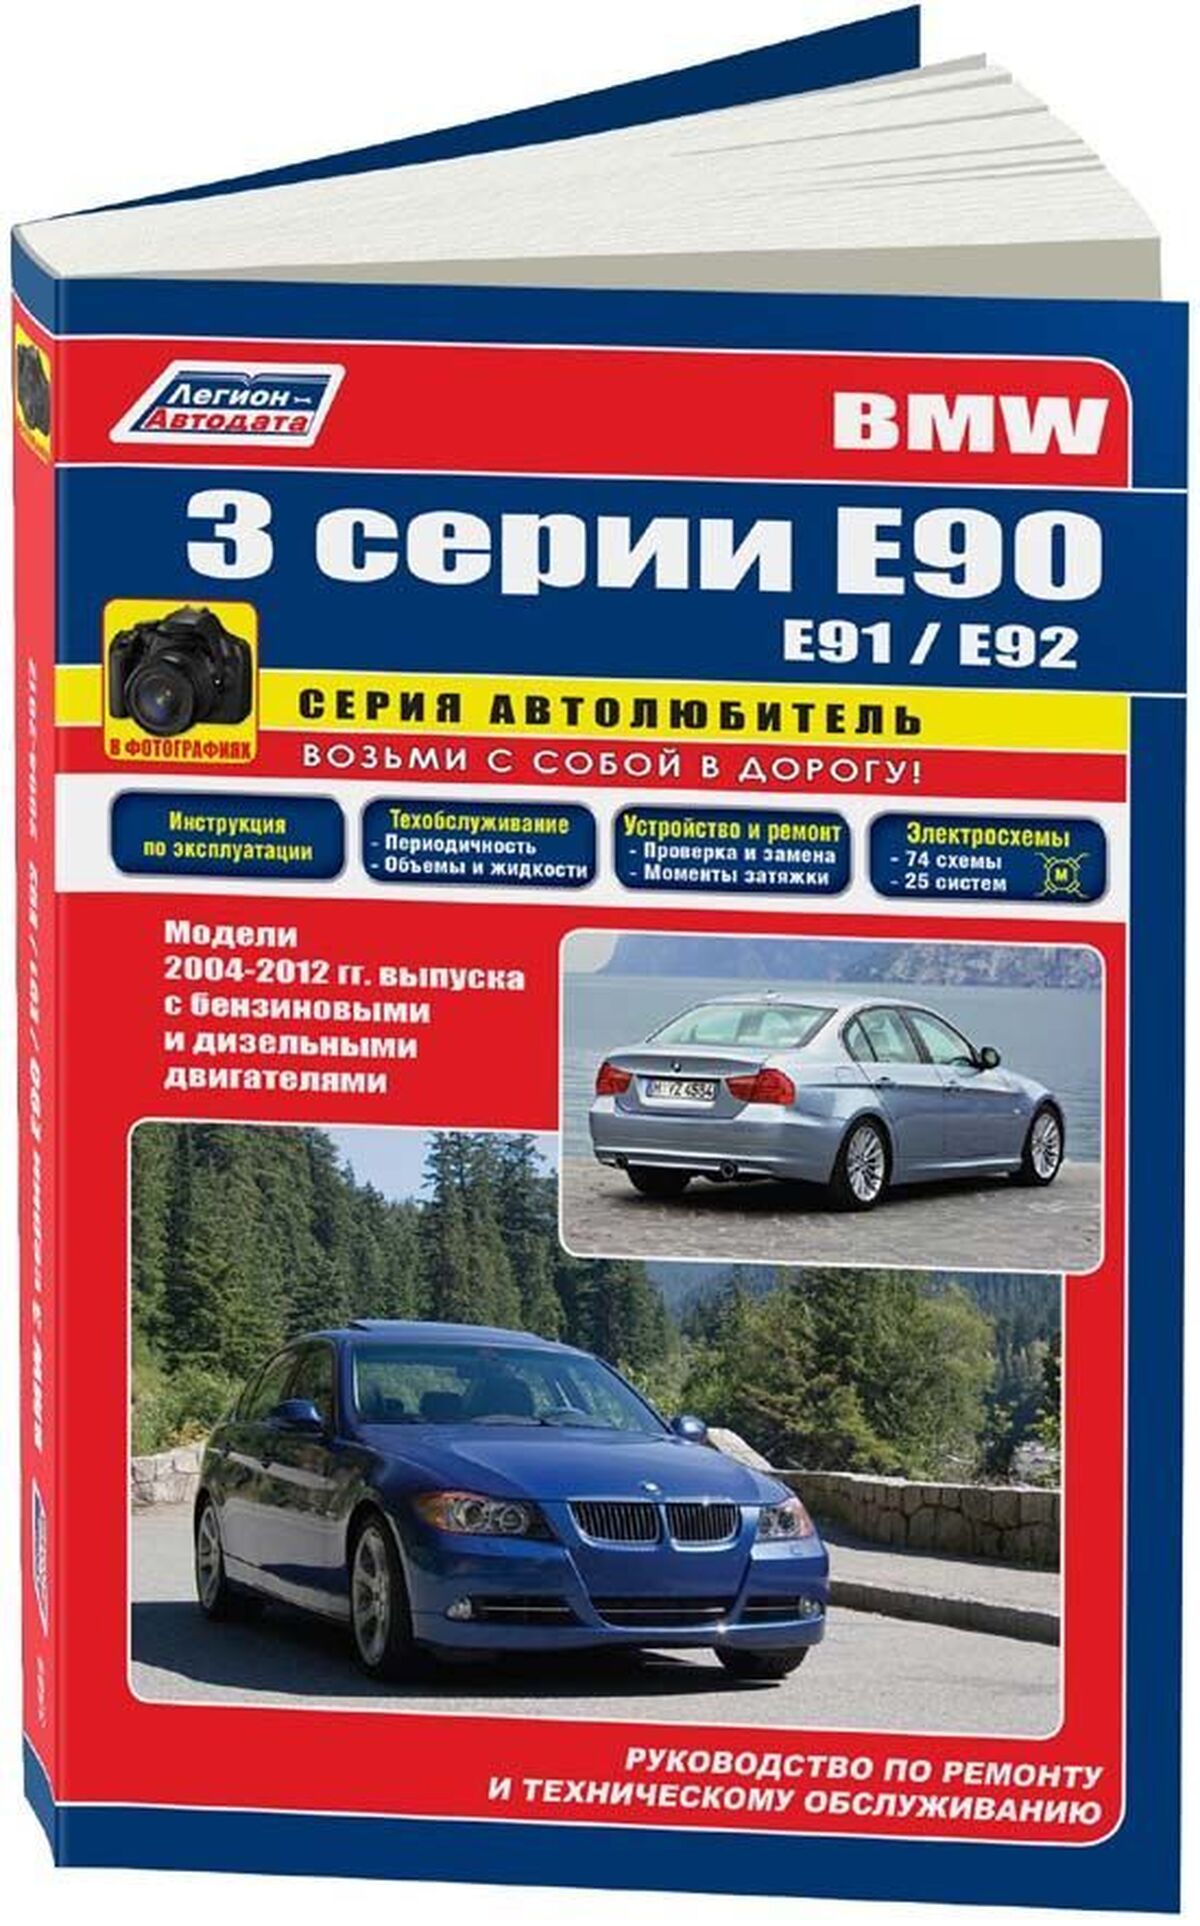 Книга: BMW 3 серии (E90) (б , д) с 2003 г.в., рем., экспл., то | Легион-Aвтодата